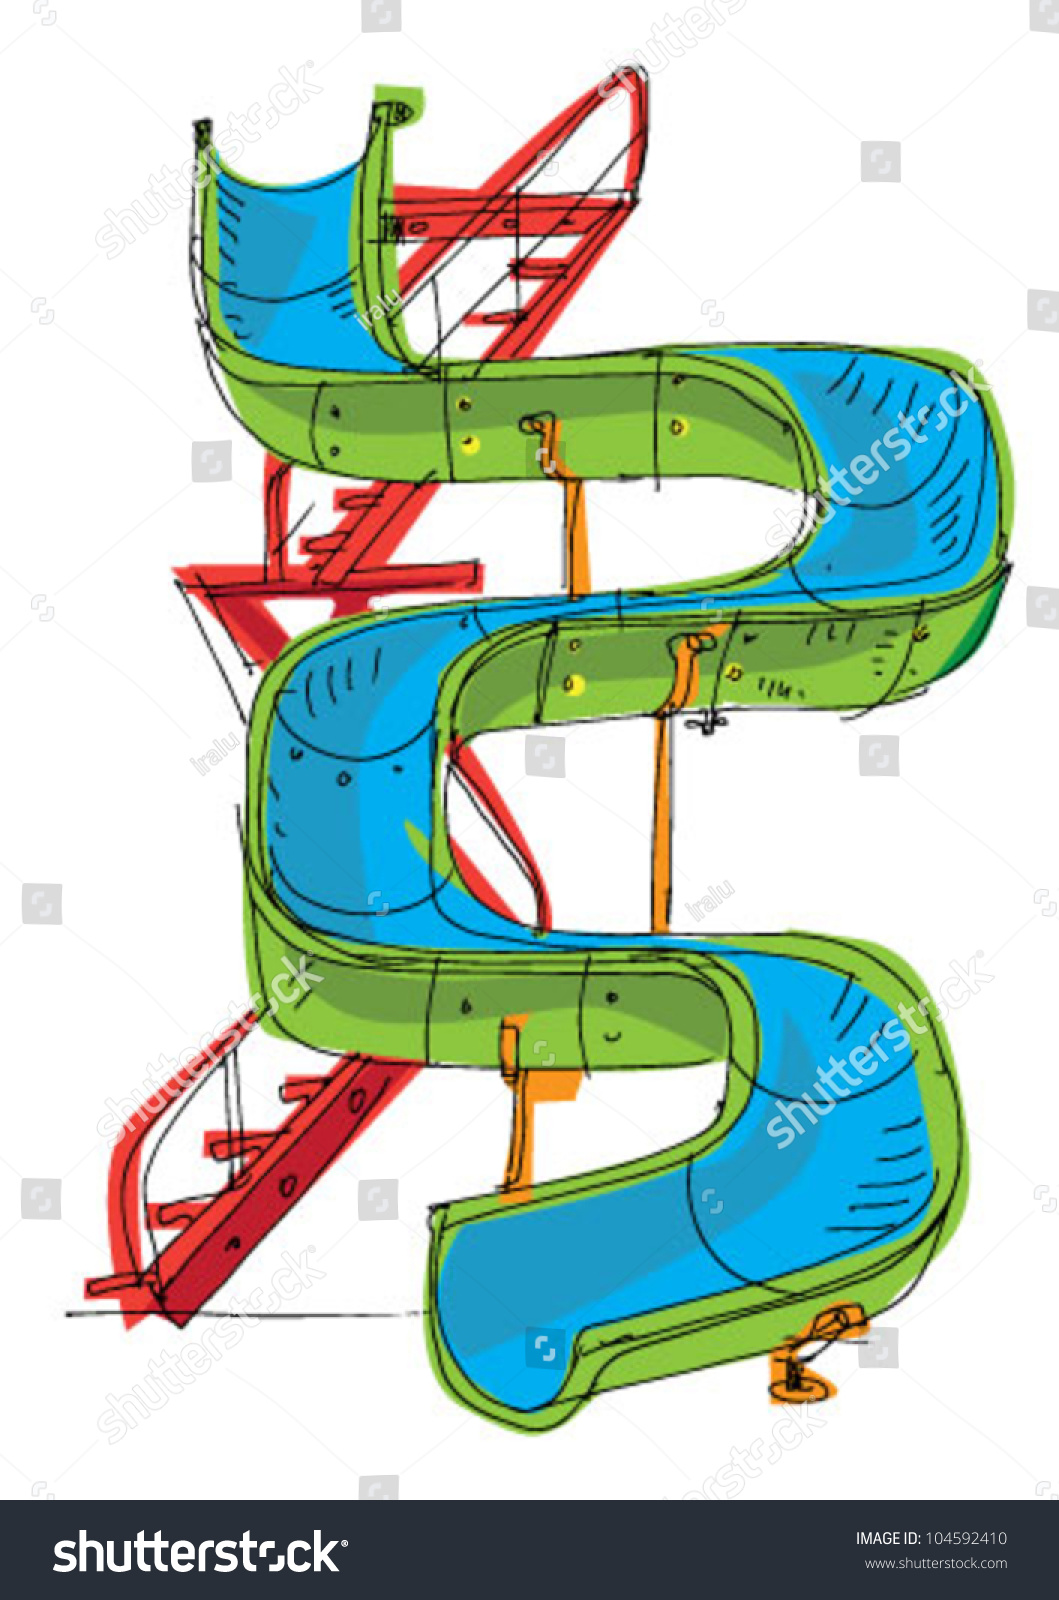 Water Park - Slide - Cartoon Stock Vector Illustration 104592410 ...